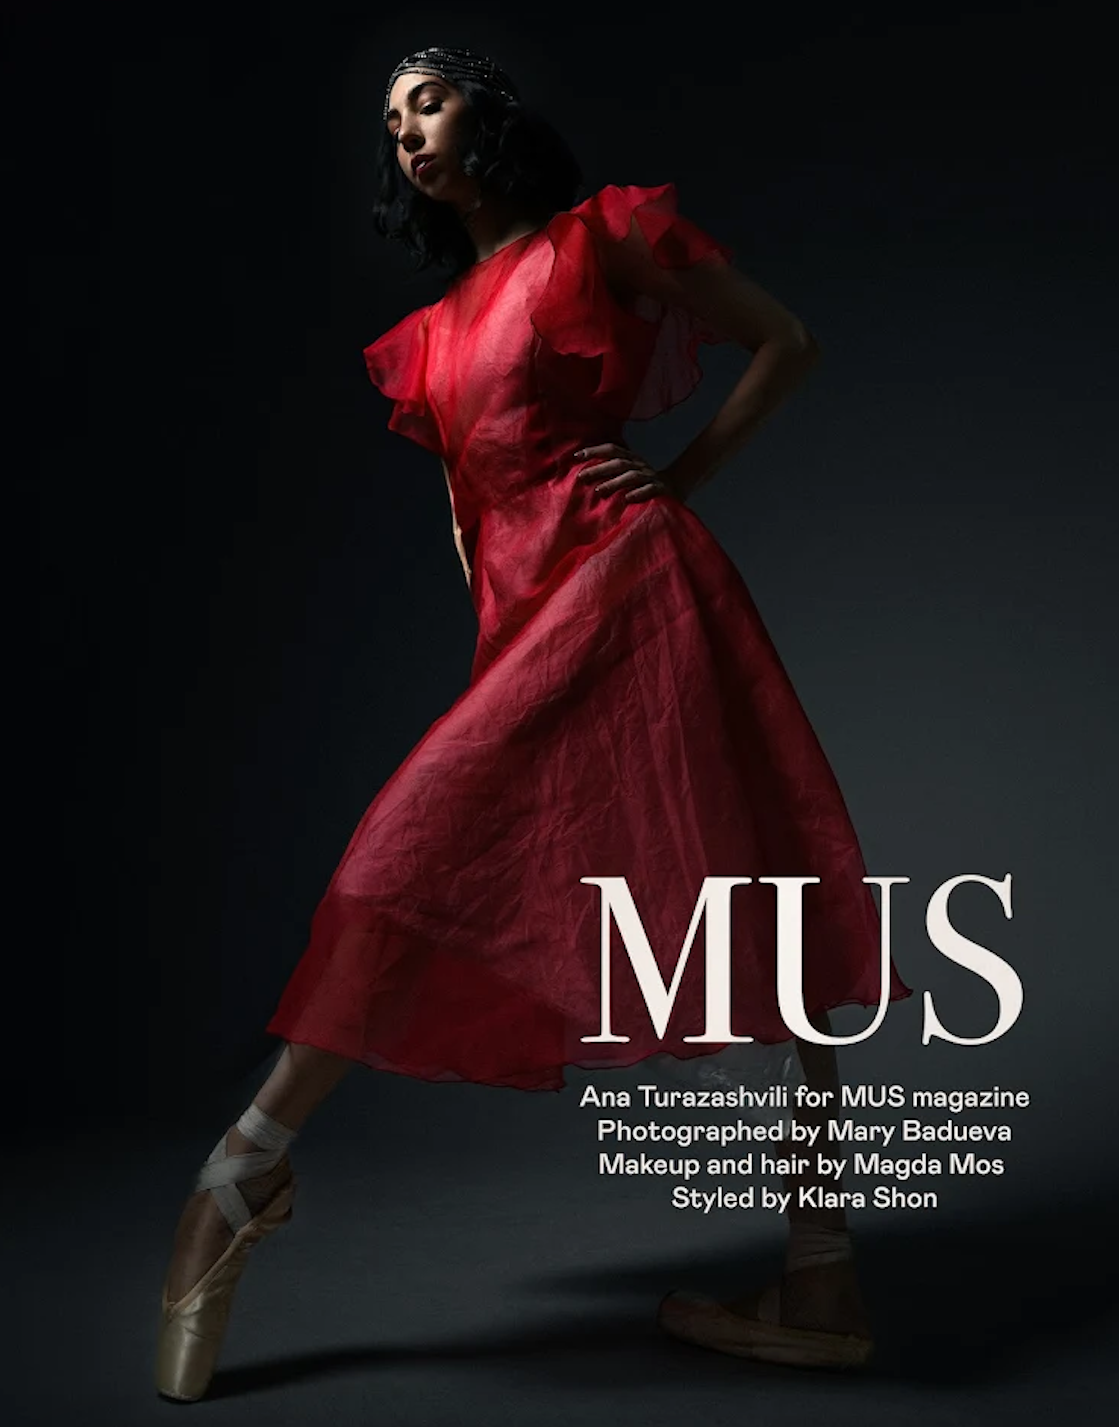 Журнал MUS выпустил ноябрьский номер